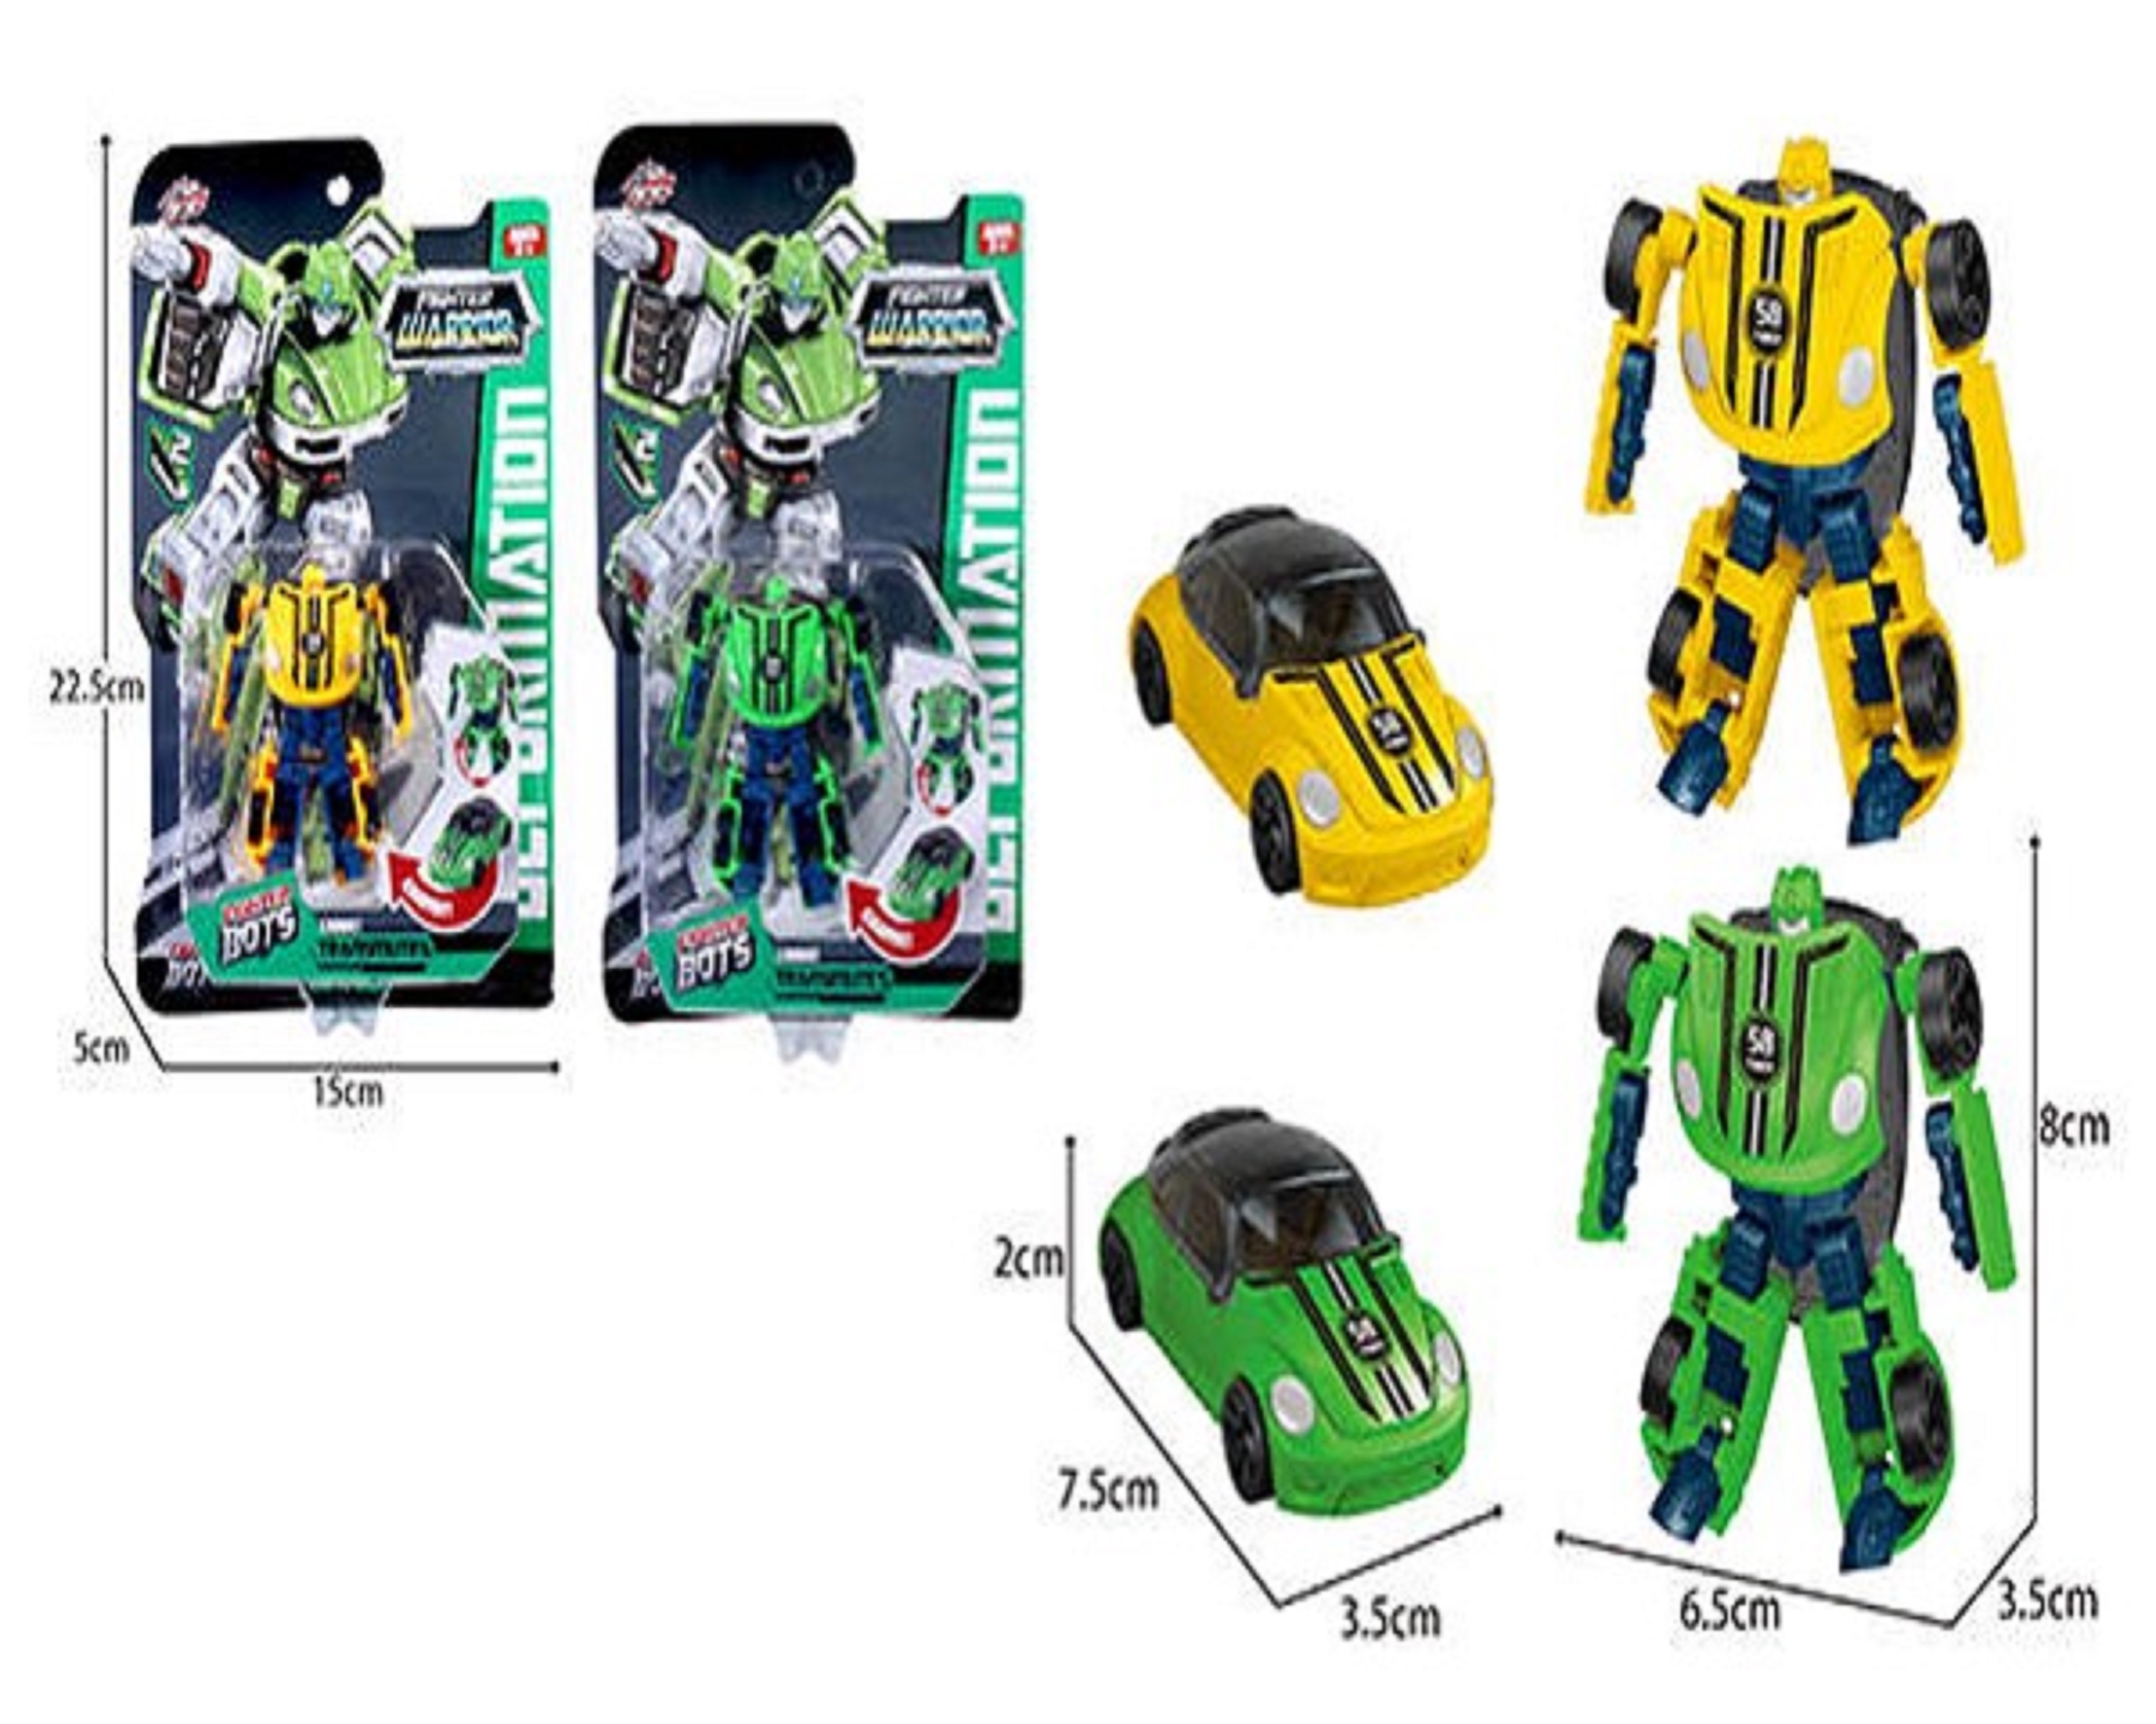 Робот-трансформер 1toy Transcar mini в ассортименте 2 вида желтый и зеленый робот трансформер 1toy transcar mini